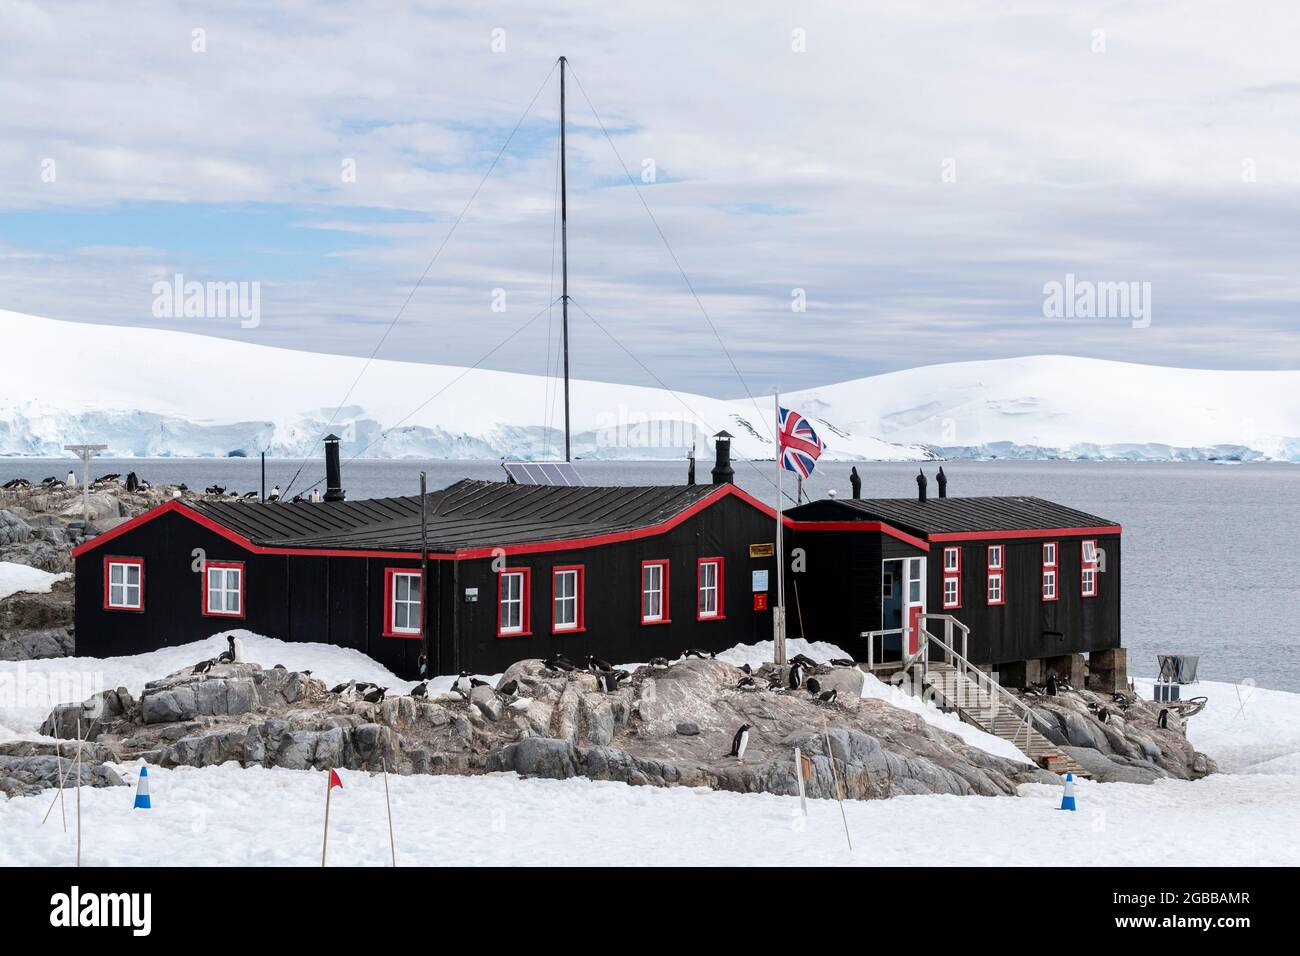 Vue extérieure de Port Lockroy, établi comme station A dans l'opération Tabarin de la Seconde Guerre mondiale, île Goudier, Antarctique, régions polaires Banque D'Images